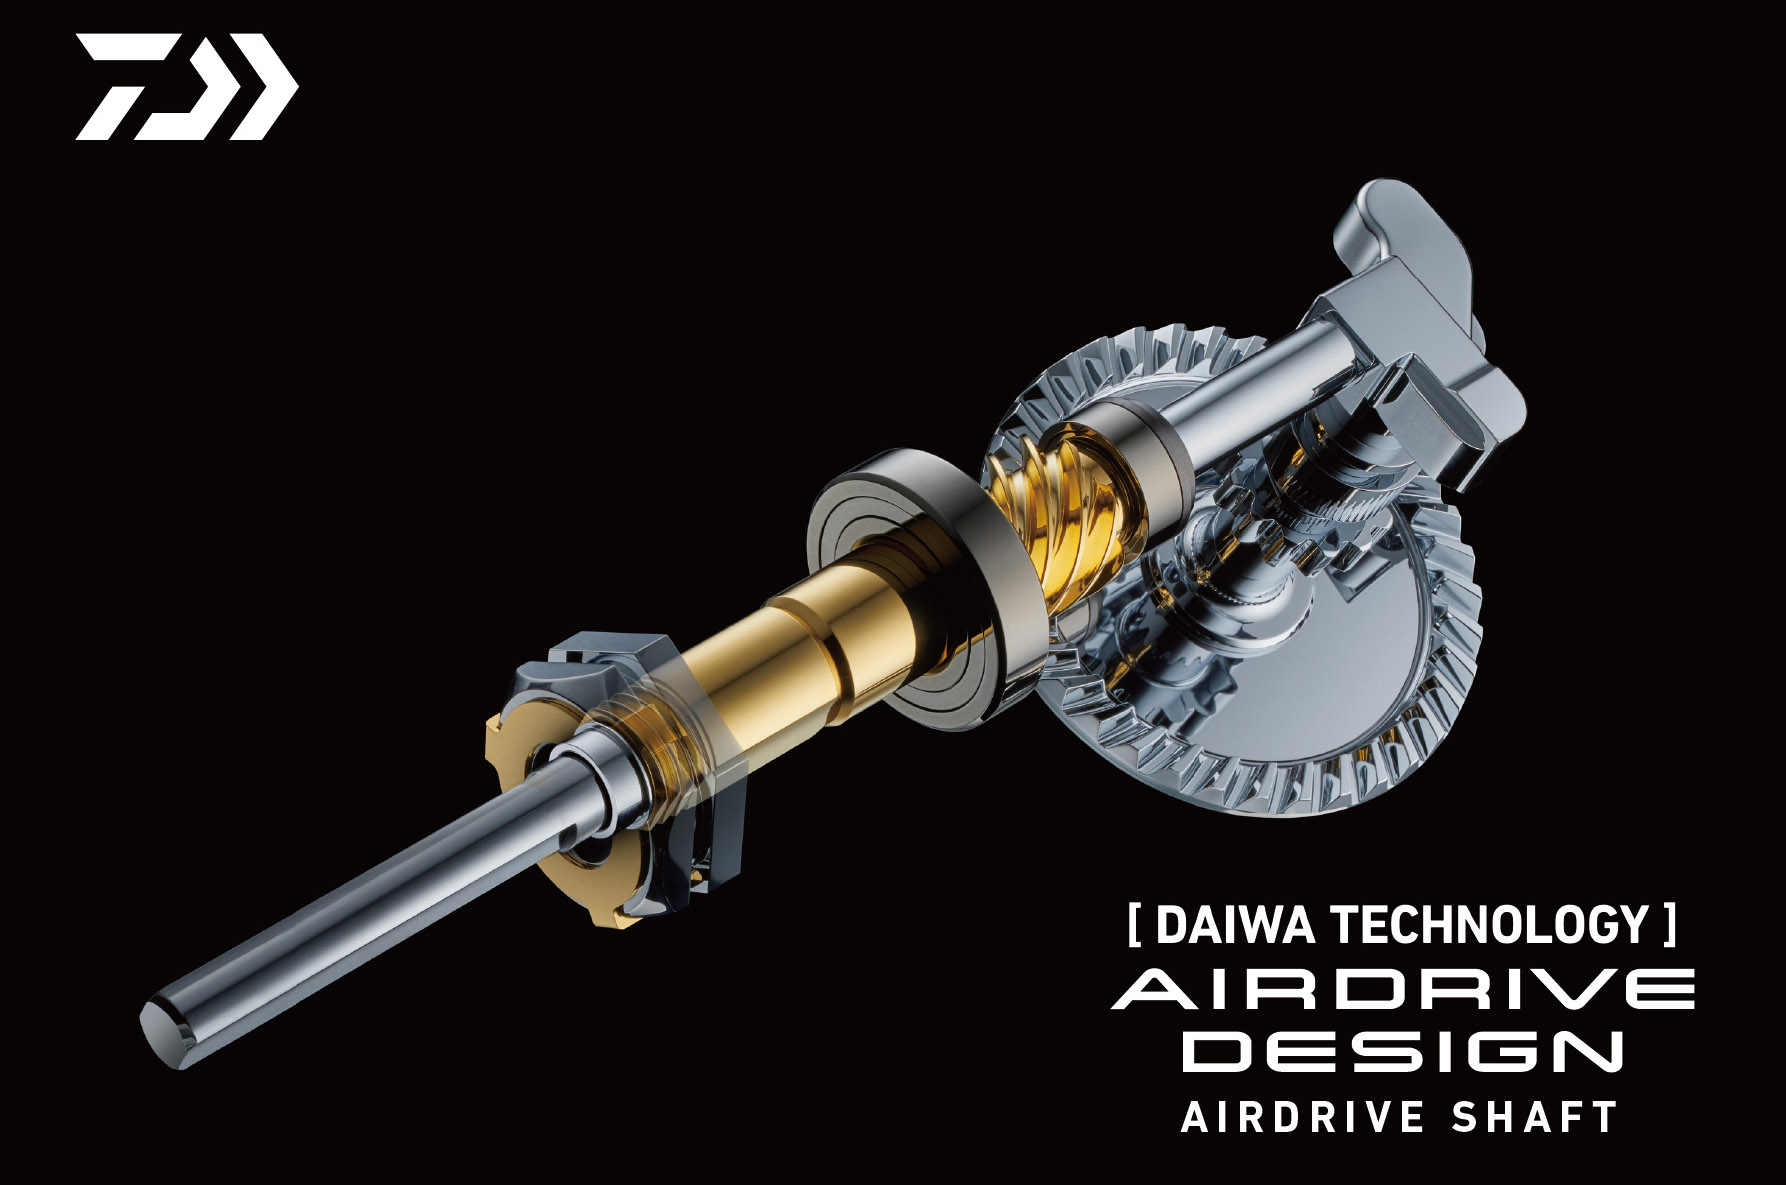 Daiwas Airdrive-teknologi bidrager til at gøre hjulet endnu lettere, bedre afbalanceret og endnu mere smooth under indspinningen. 